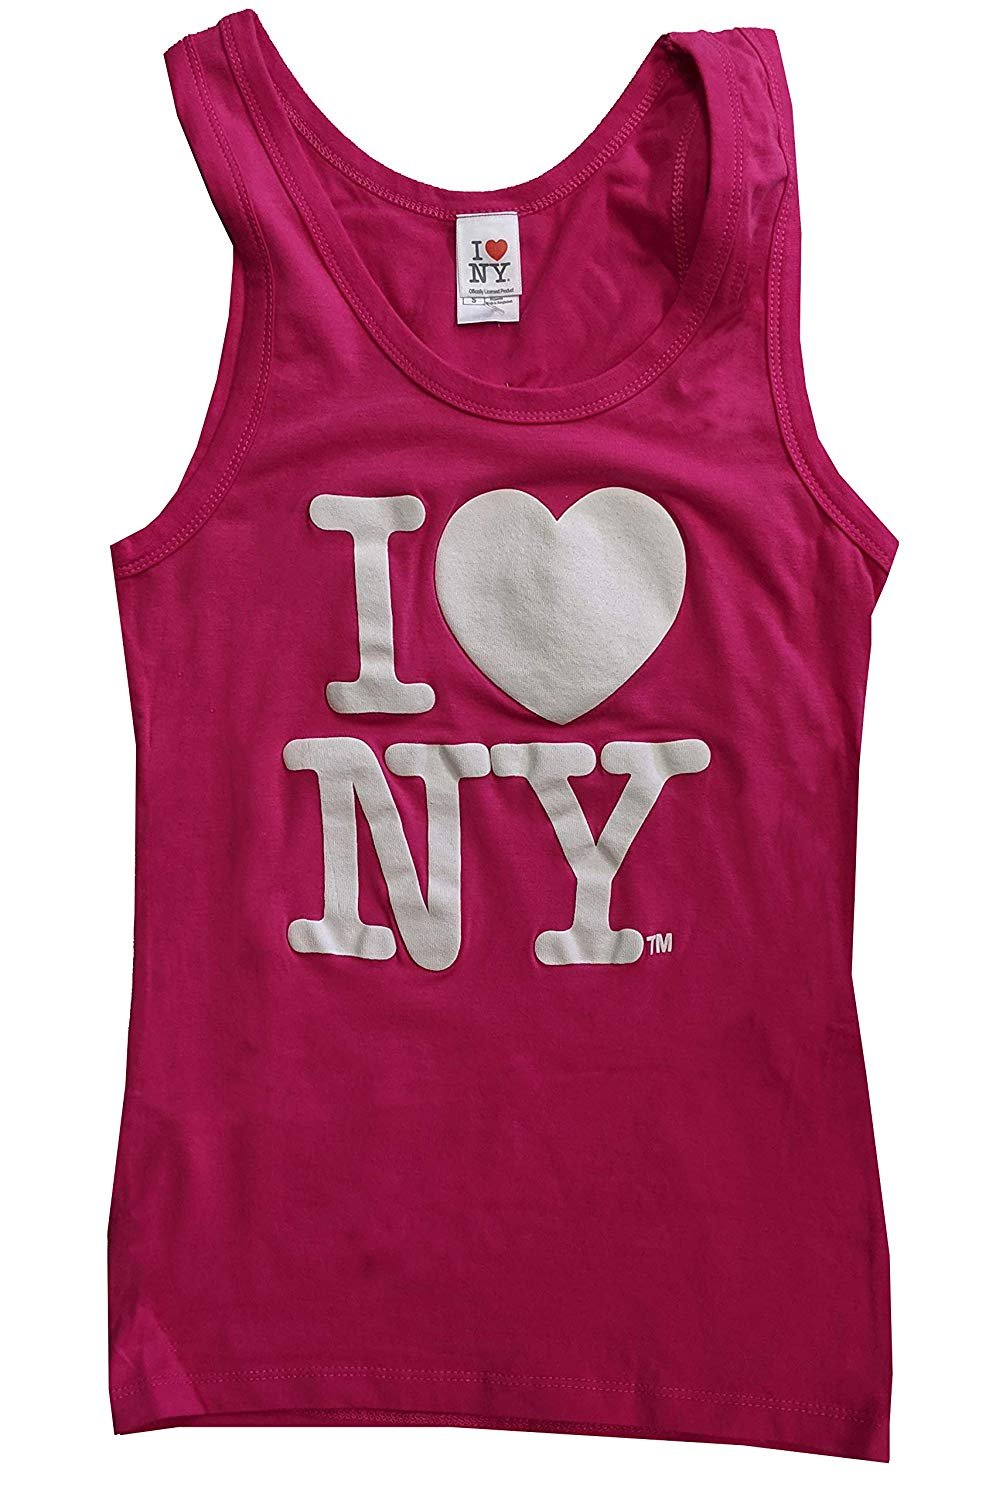 Ich liebe NY Tank Top Damen Herz Logo Womens New York T-Shirt